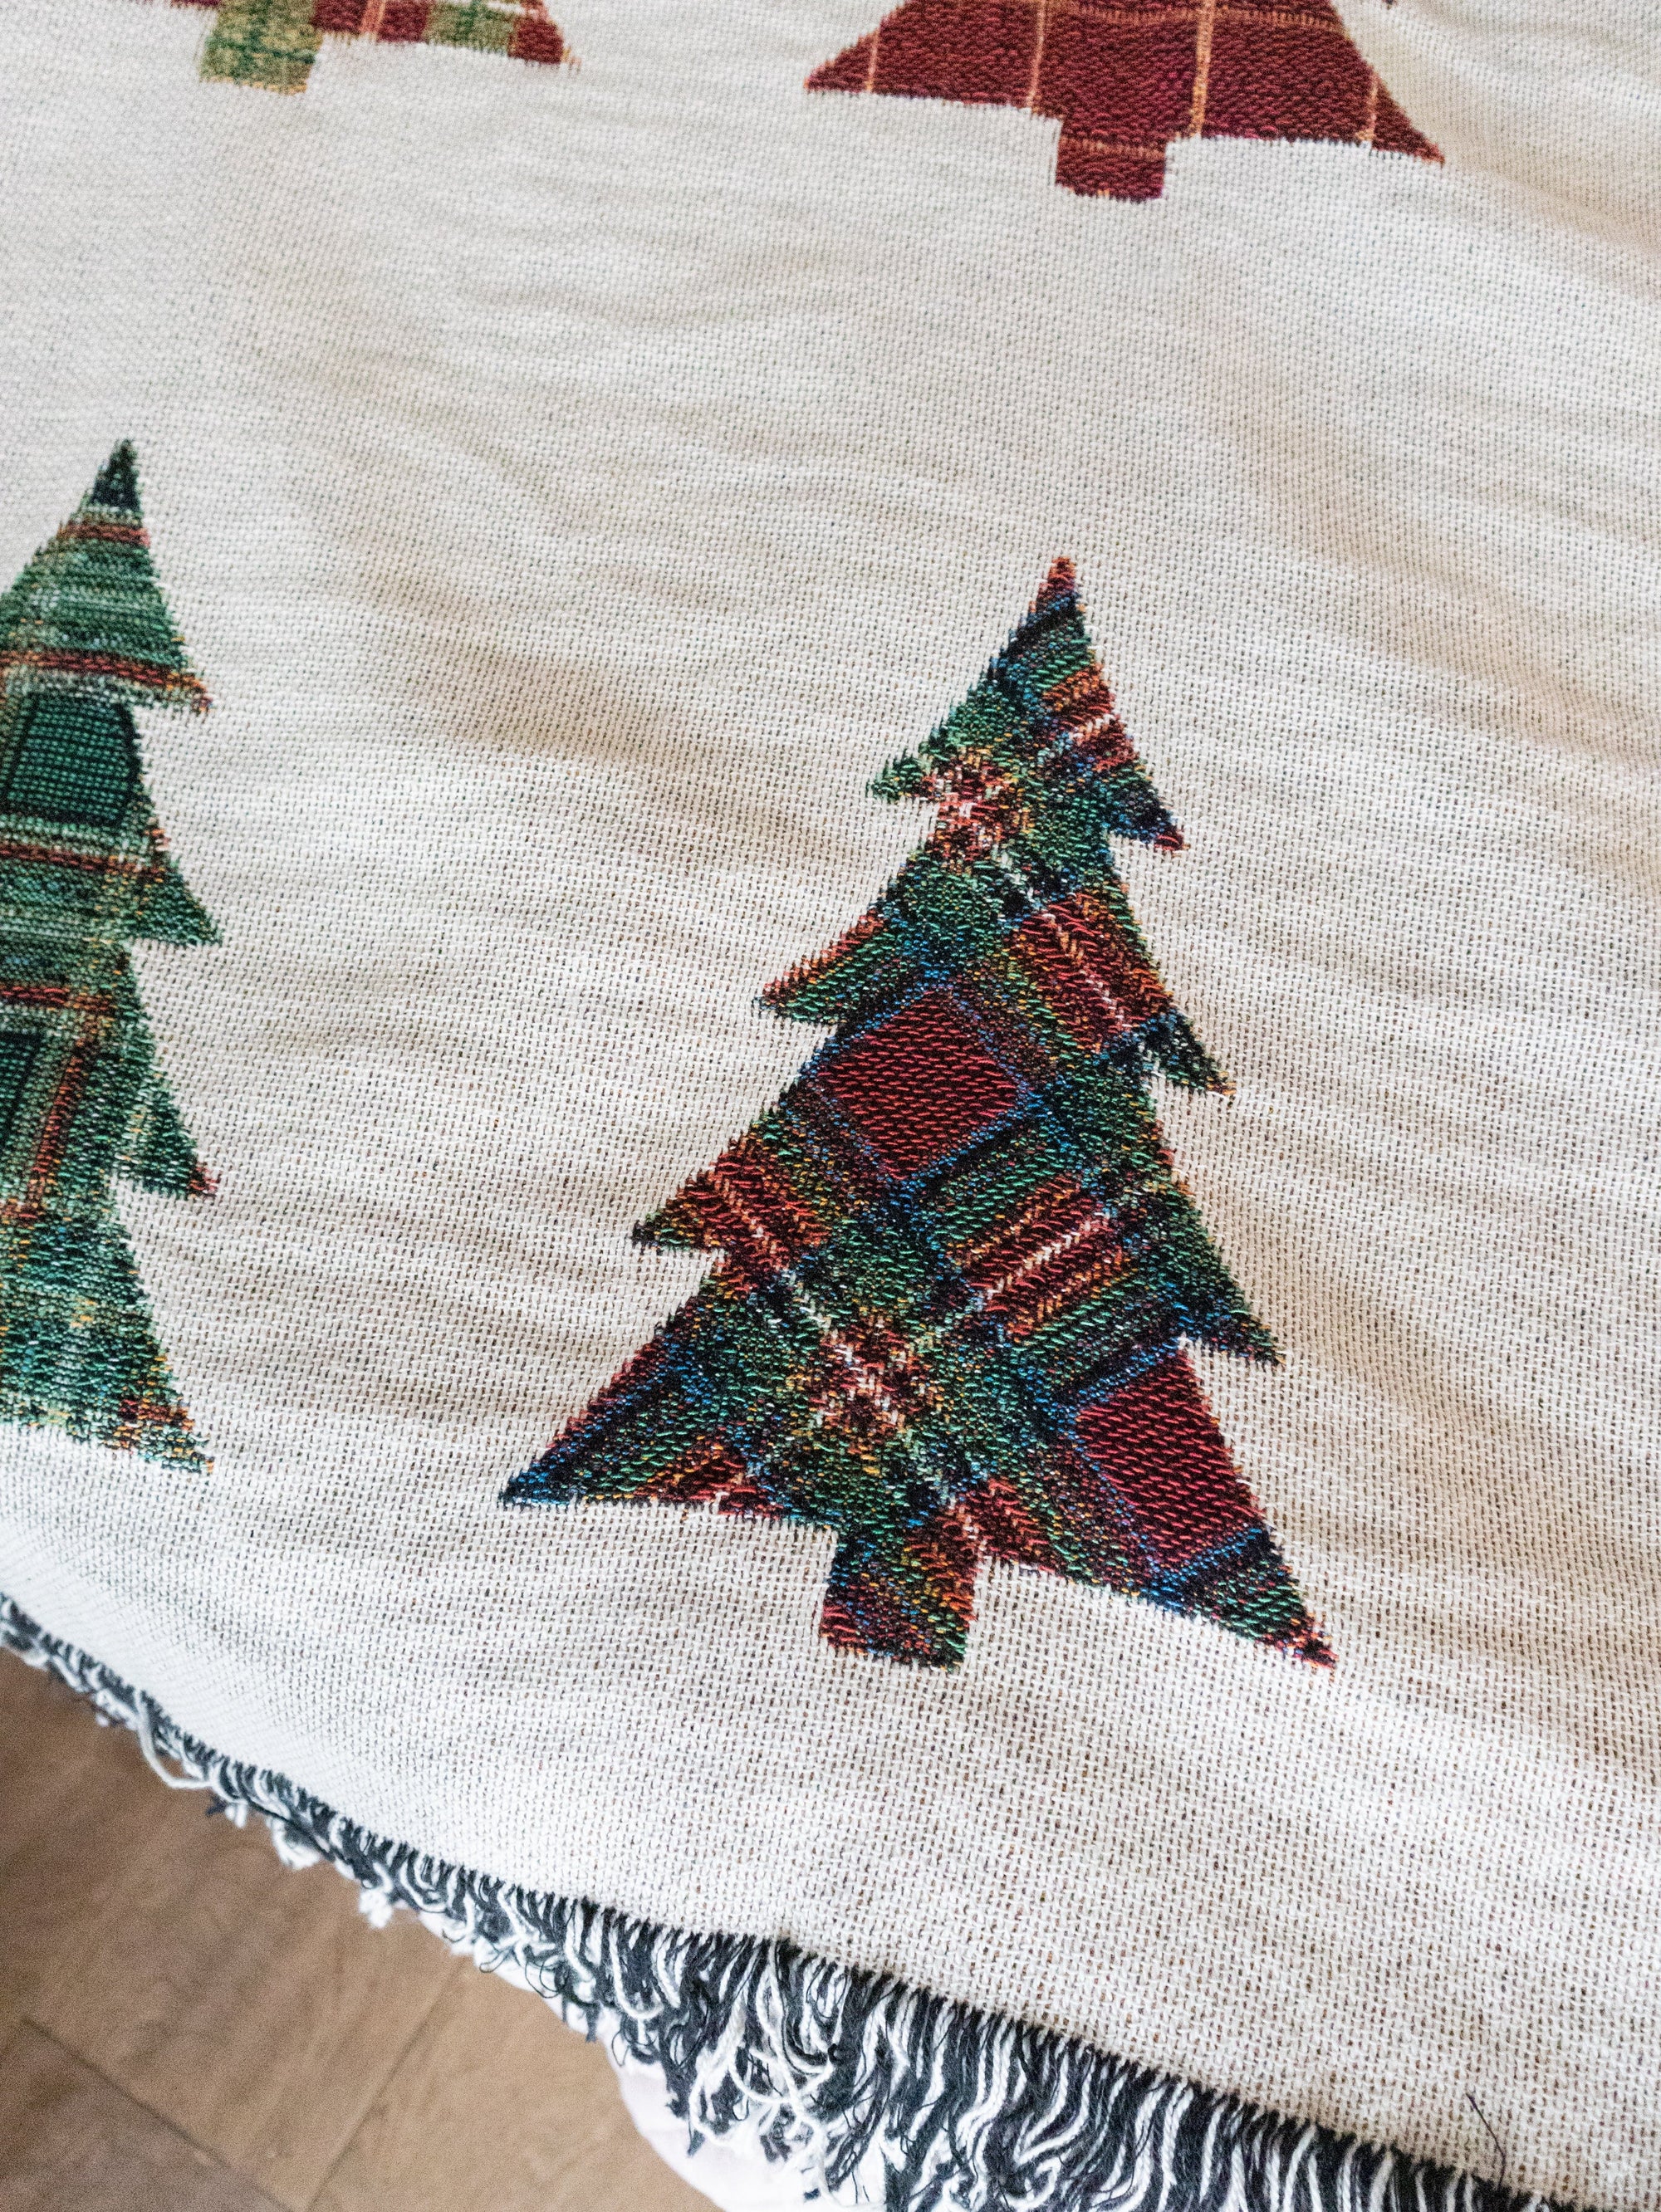 Plaid Trees Christmas Blanket